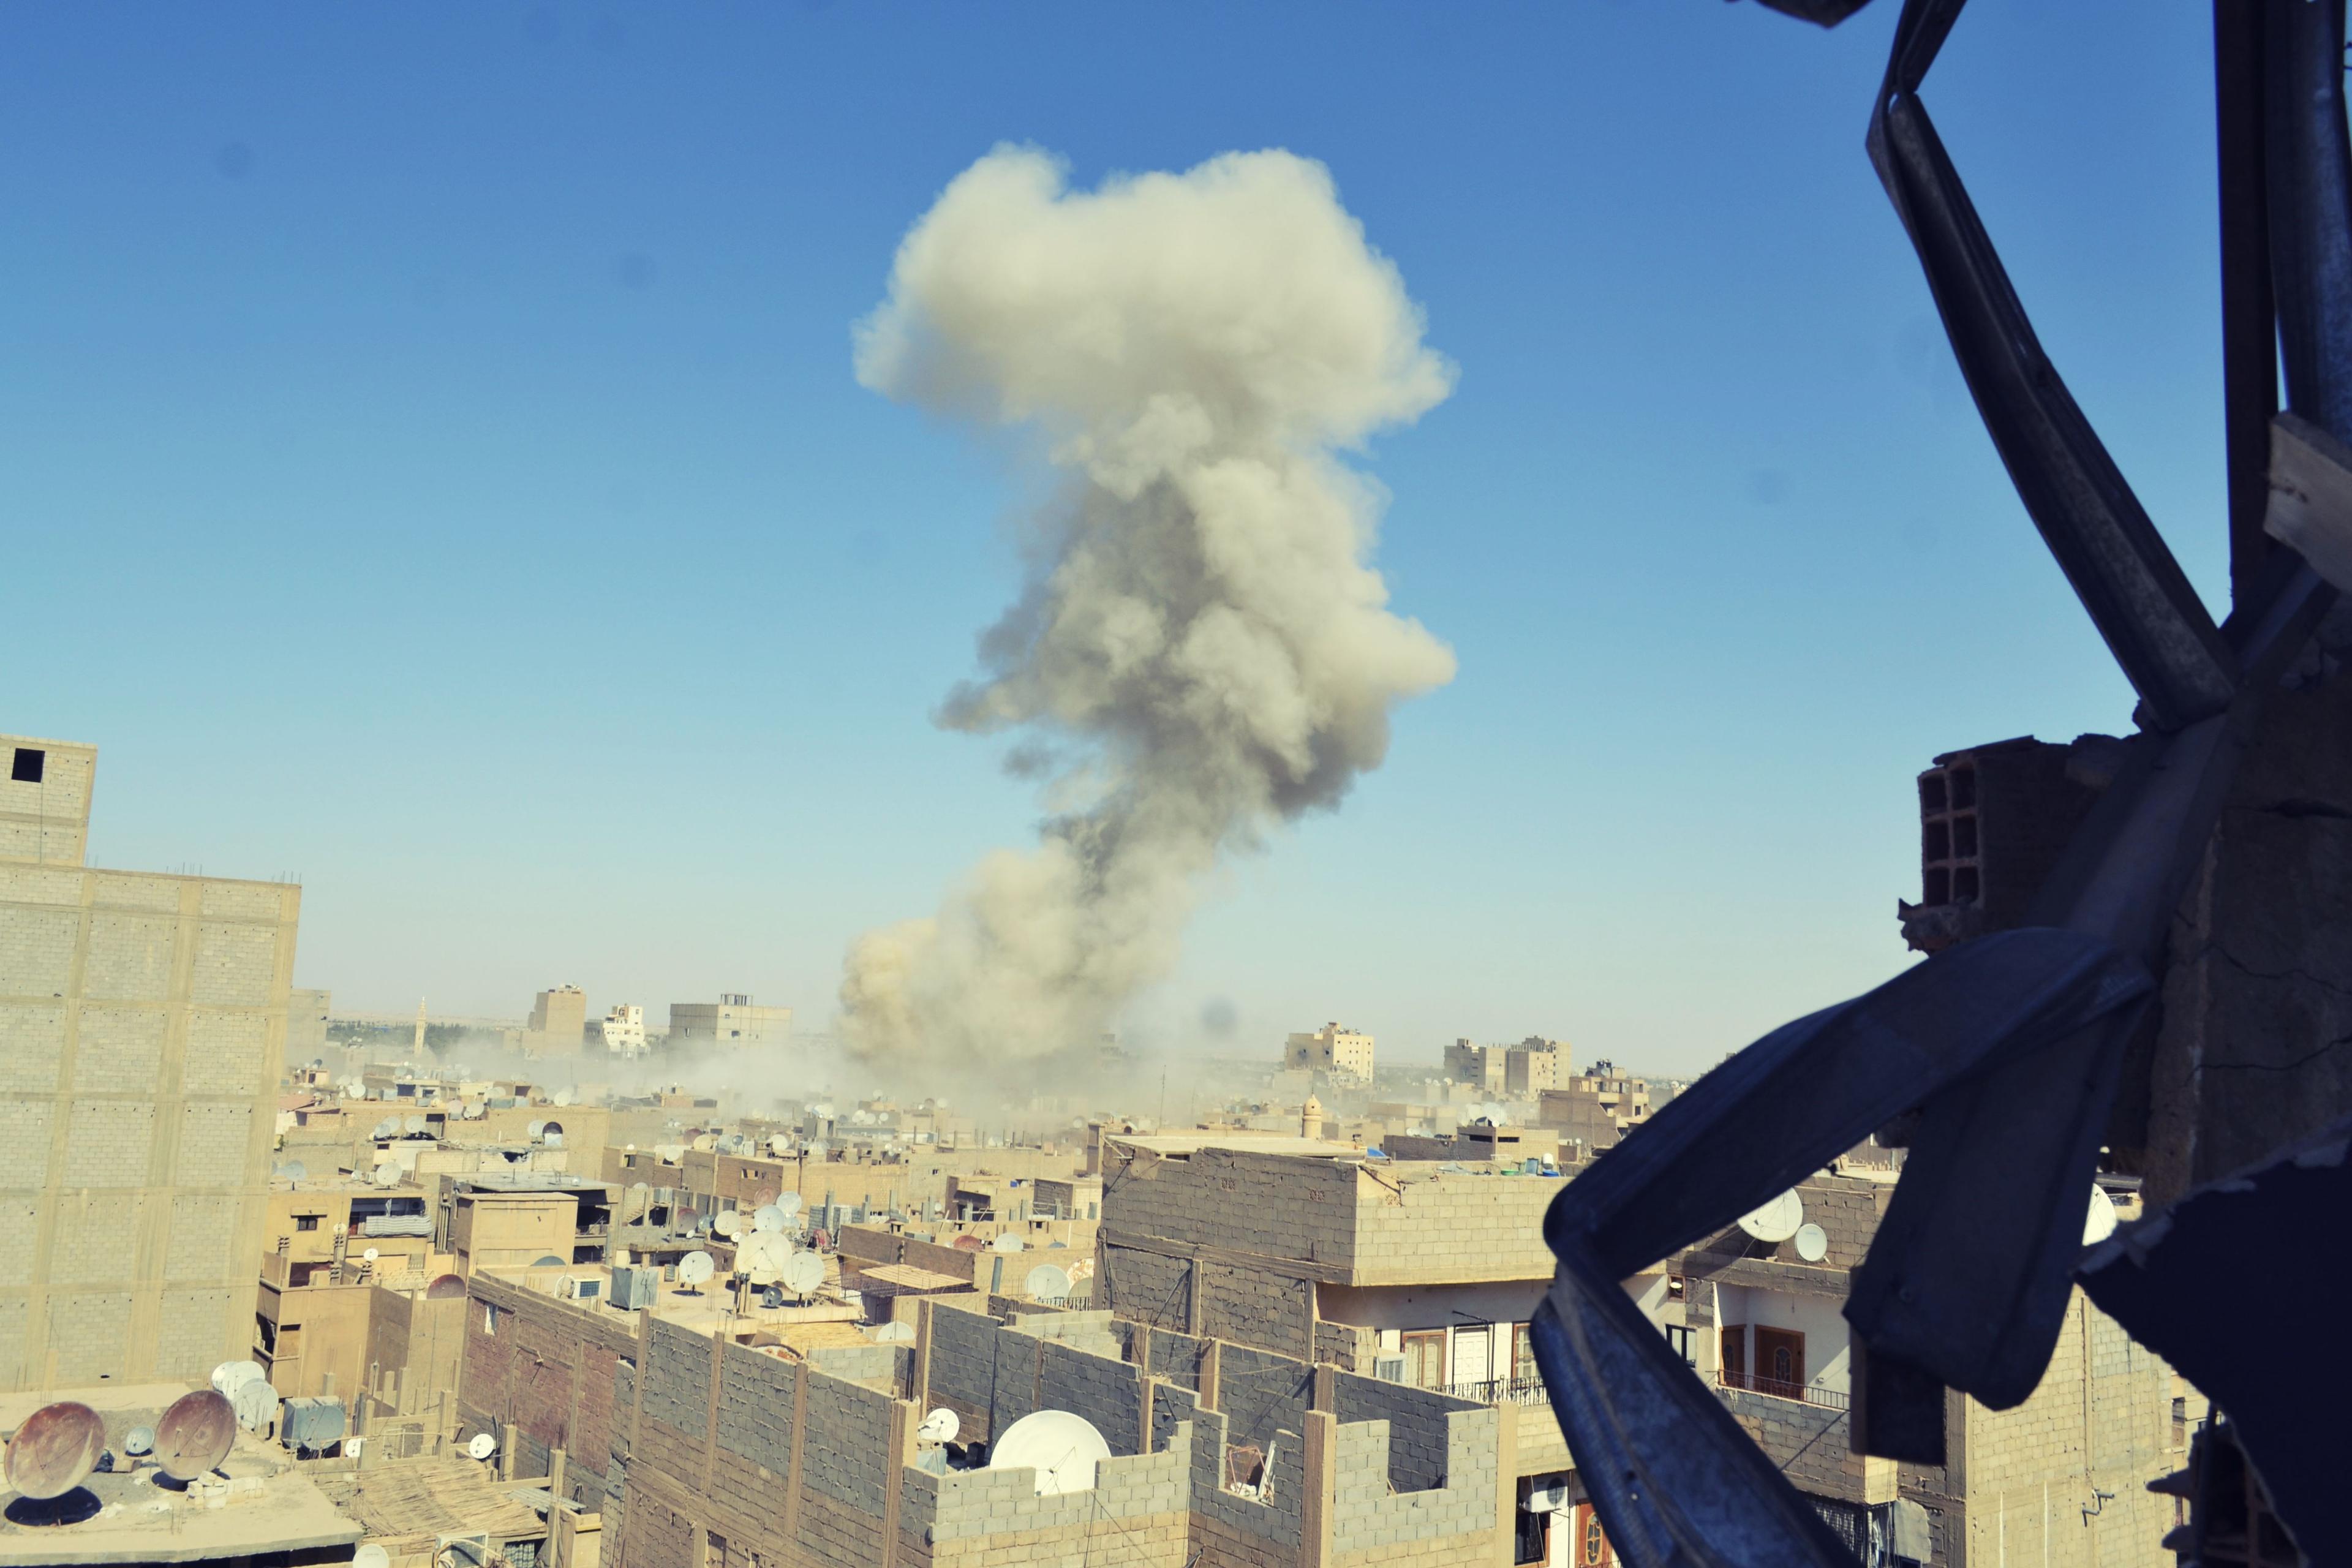 An airstrike against civilians - DeirEzzor